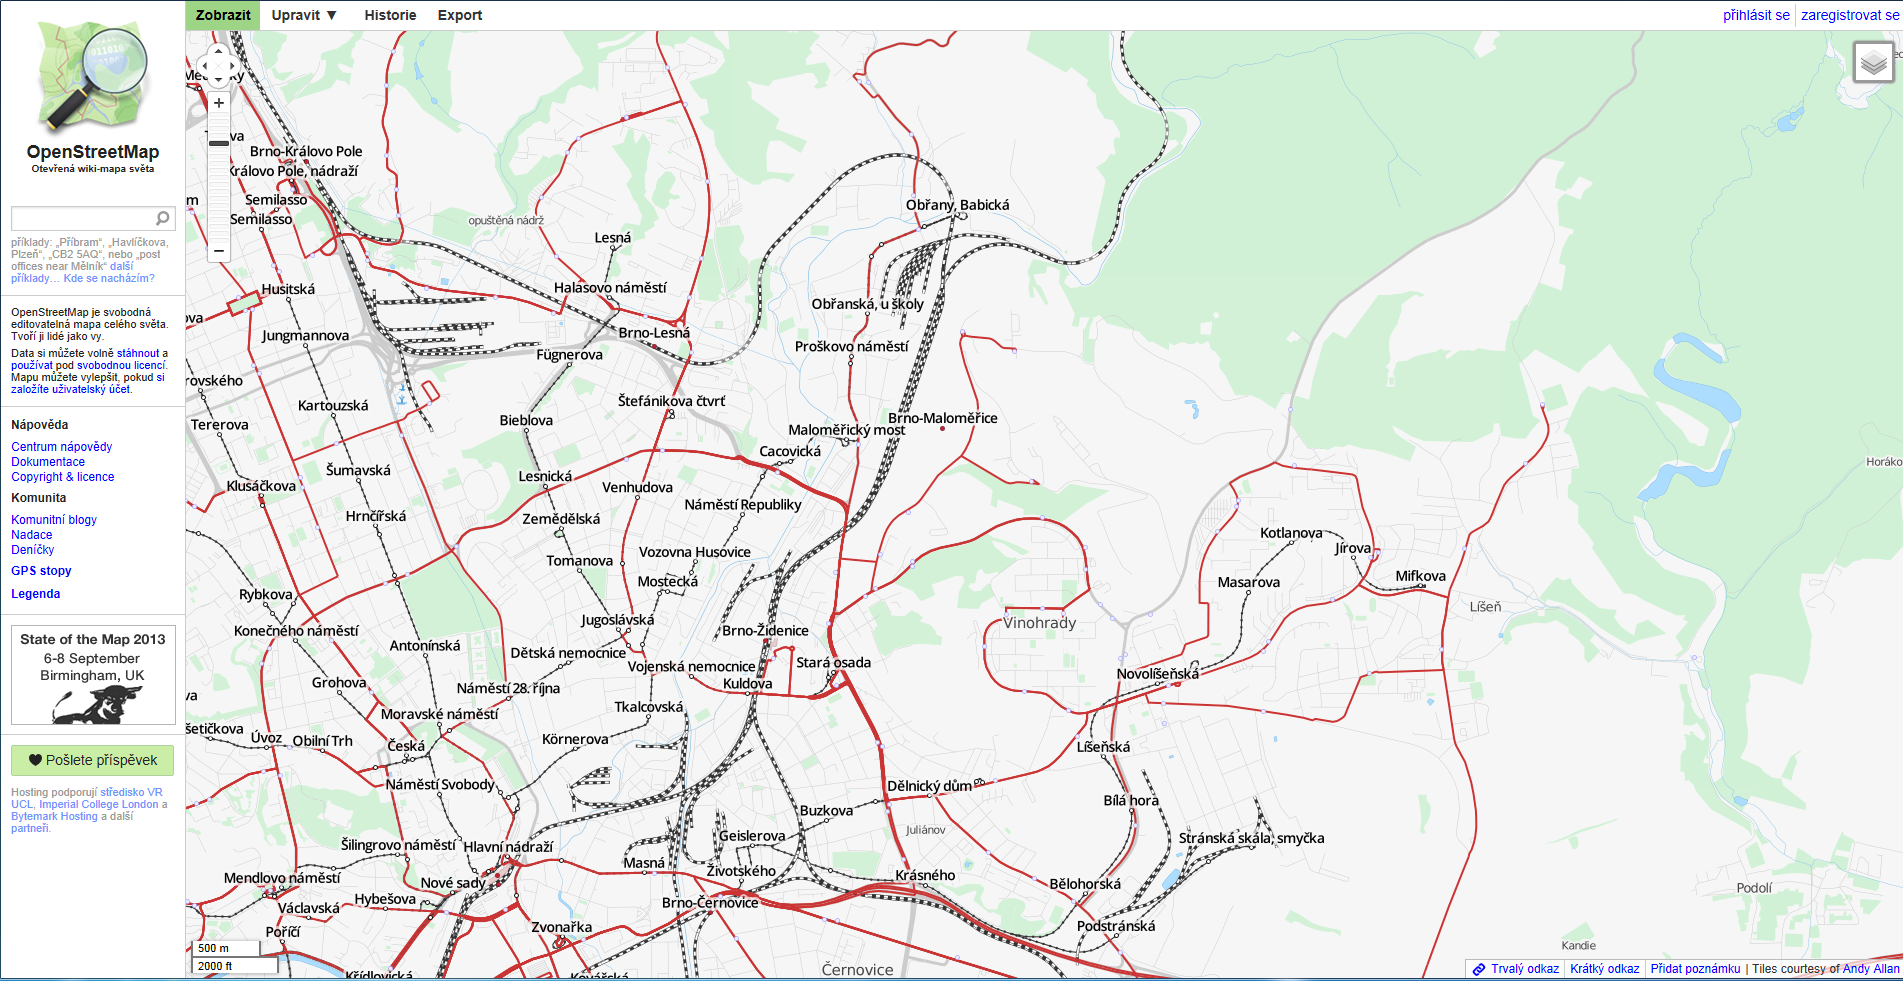 Brno-Maloměřice v mapovém portálu IZS ČR (kolečko s křížkem zobrazuje přejezd P6800 označený i